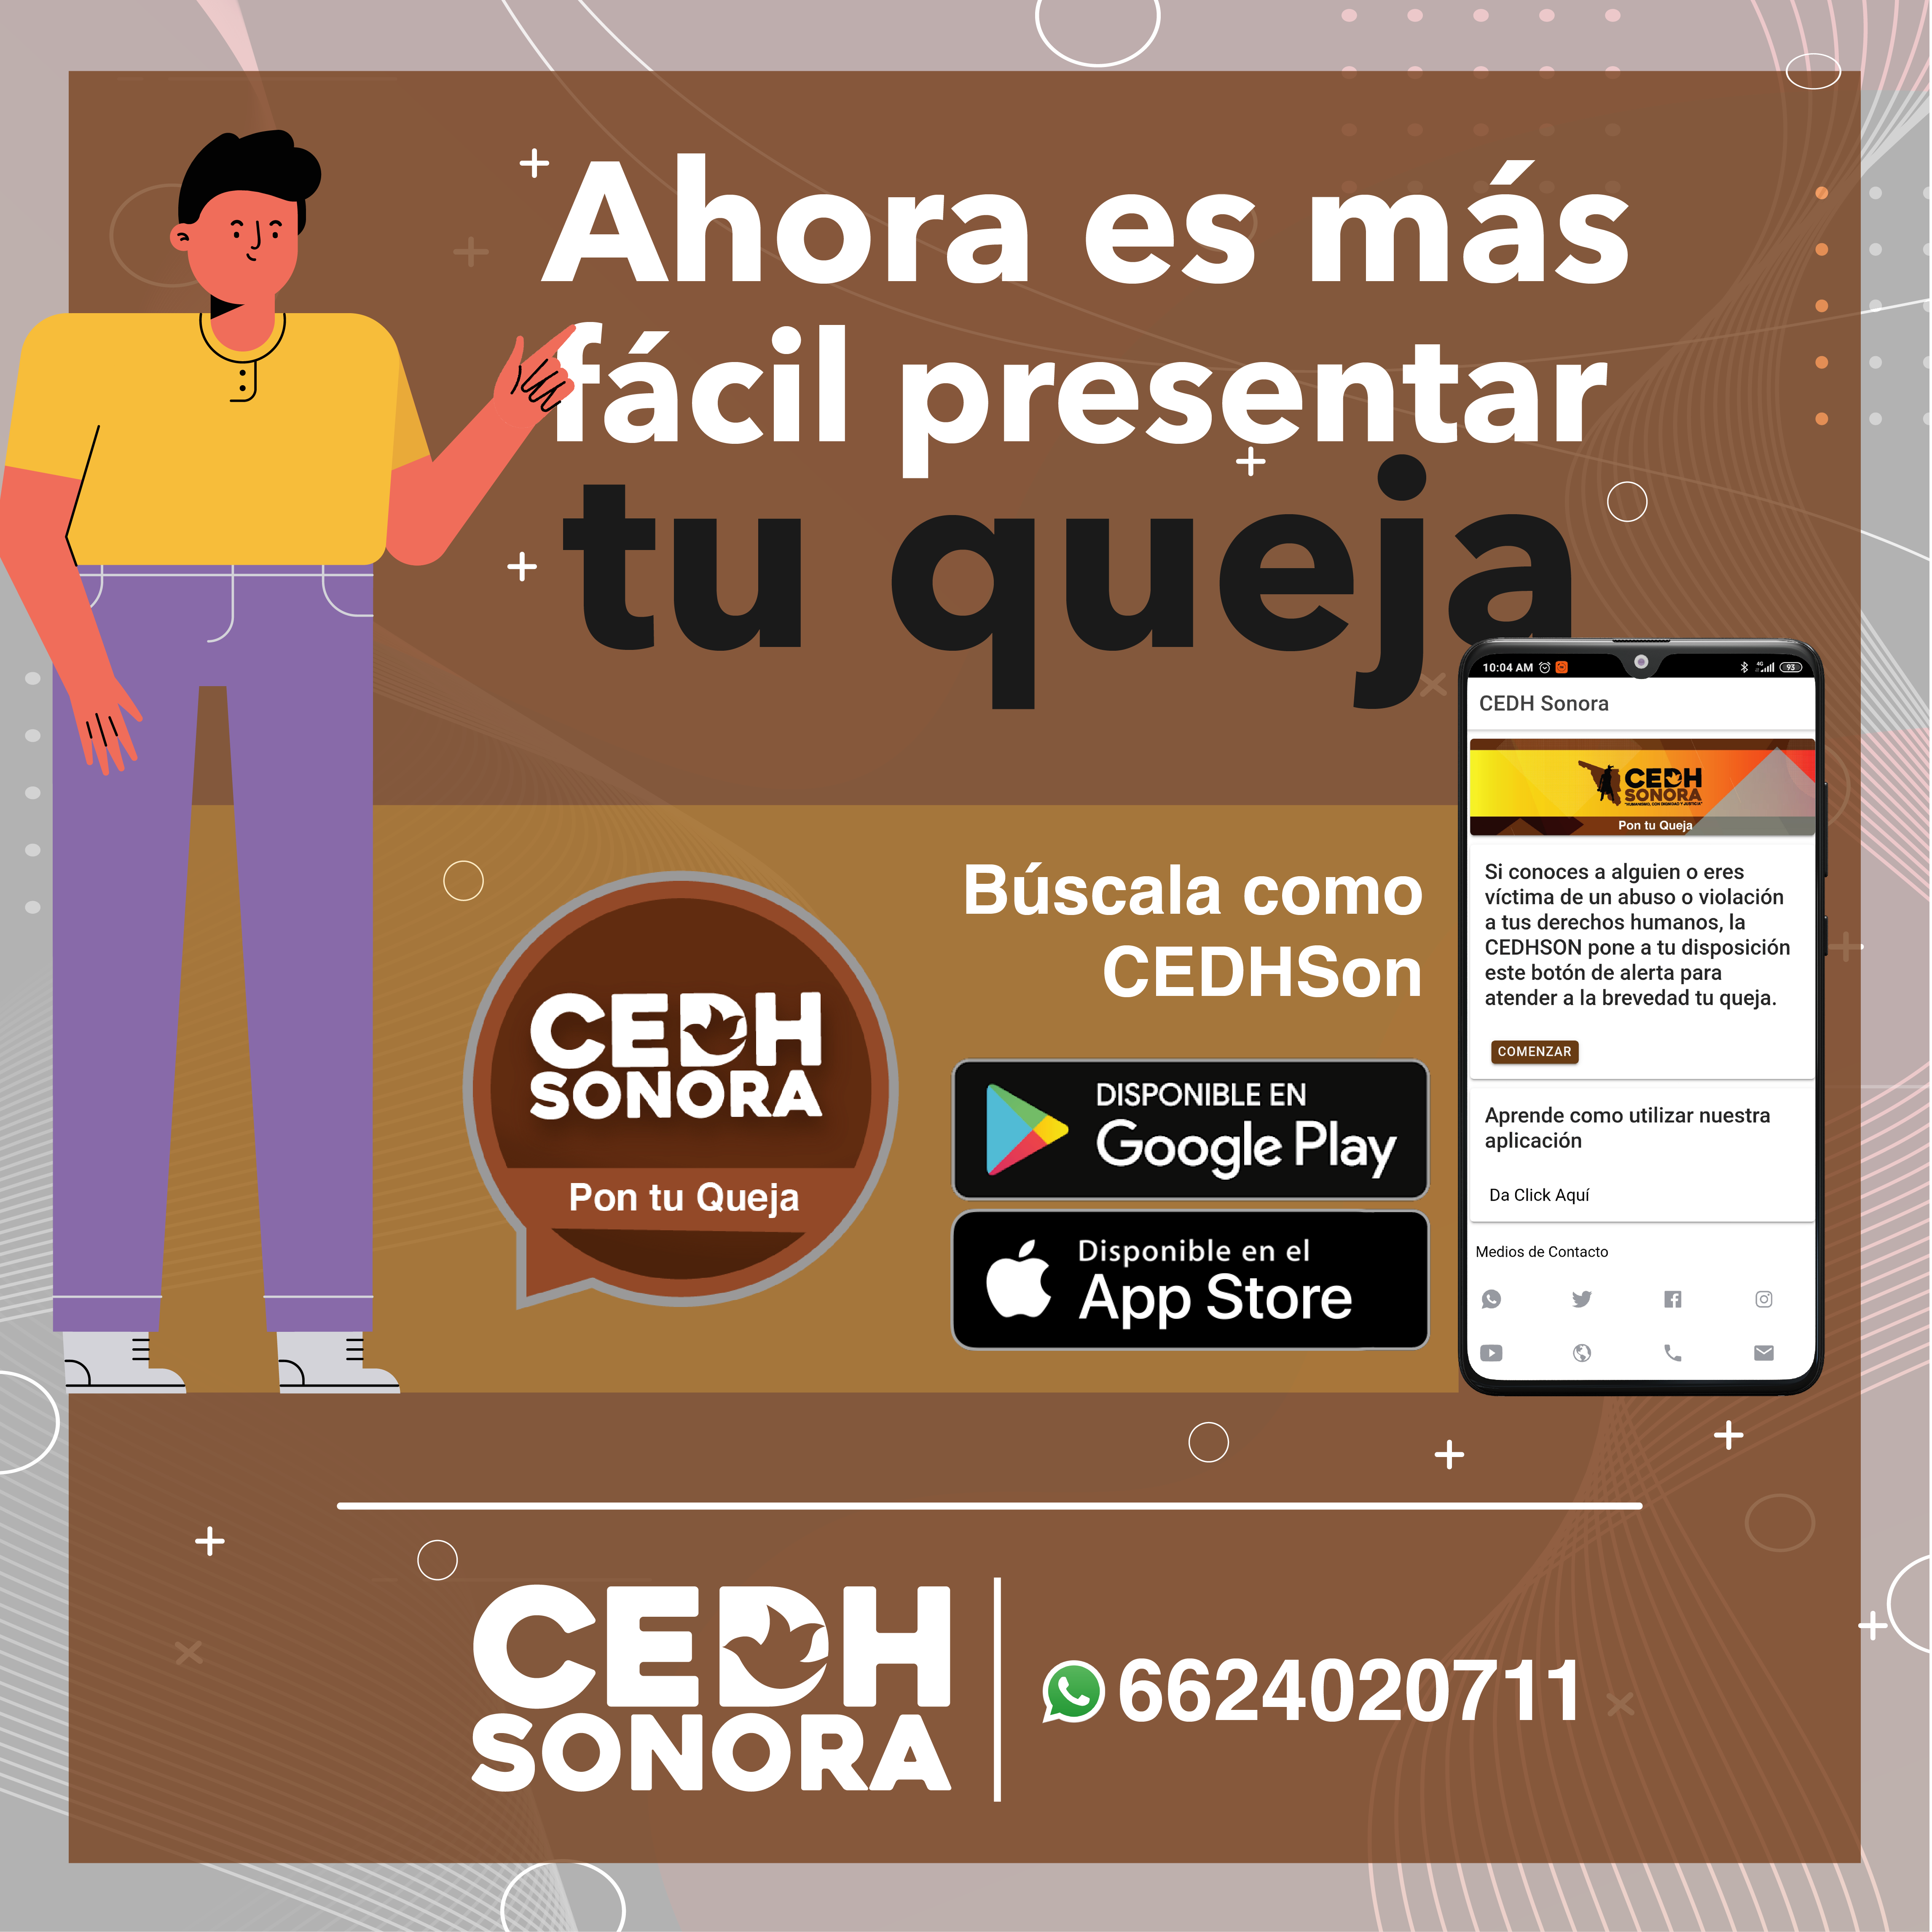 CEDH ofrece servicios con normalidad